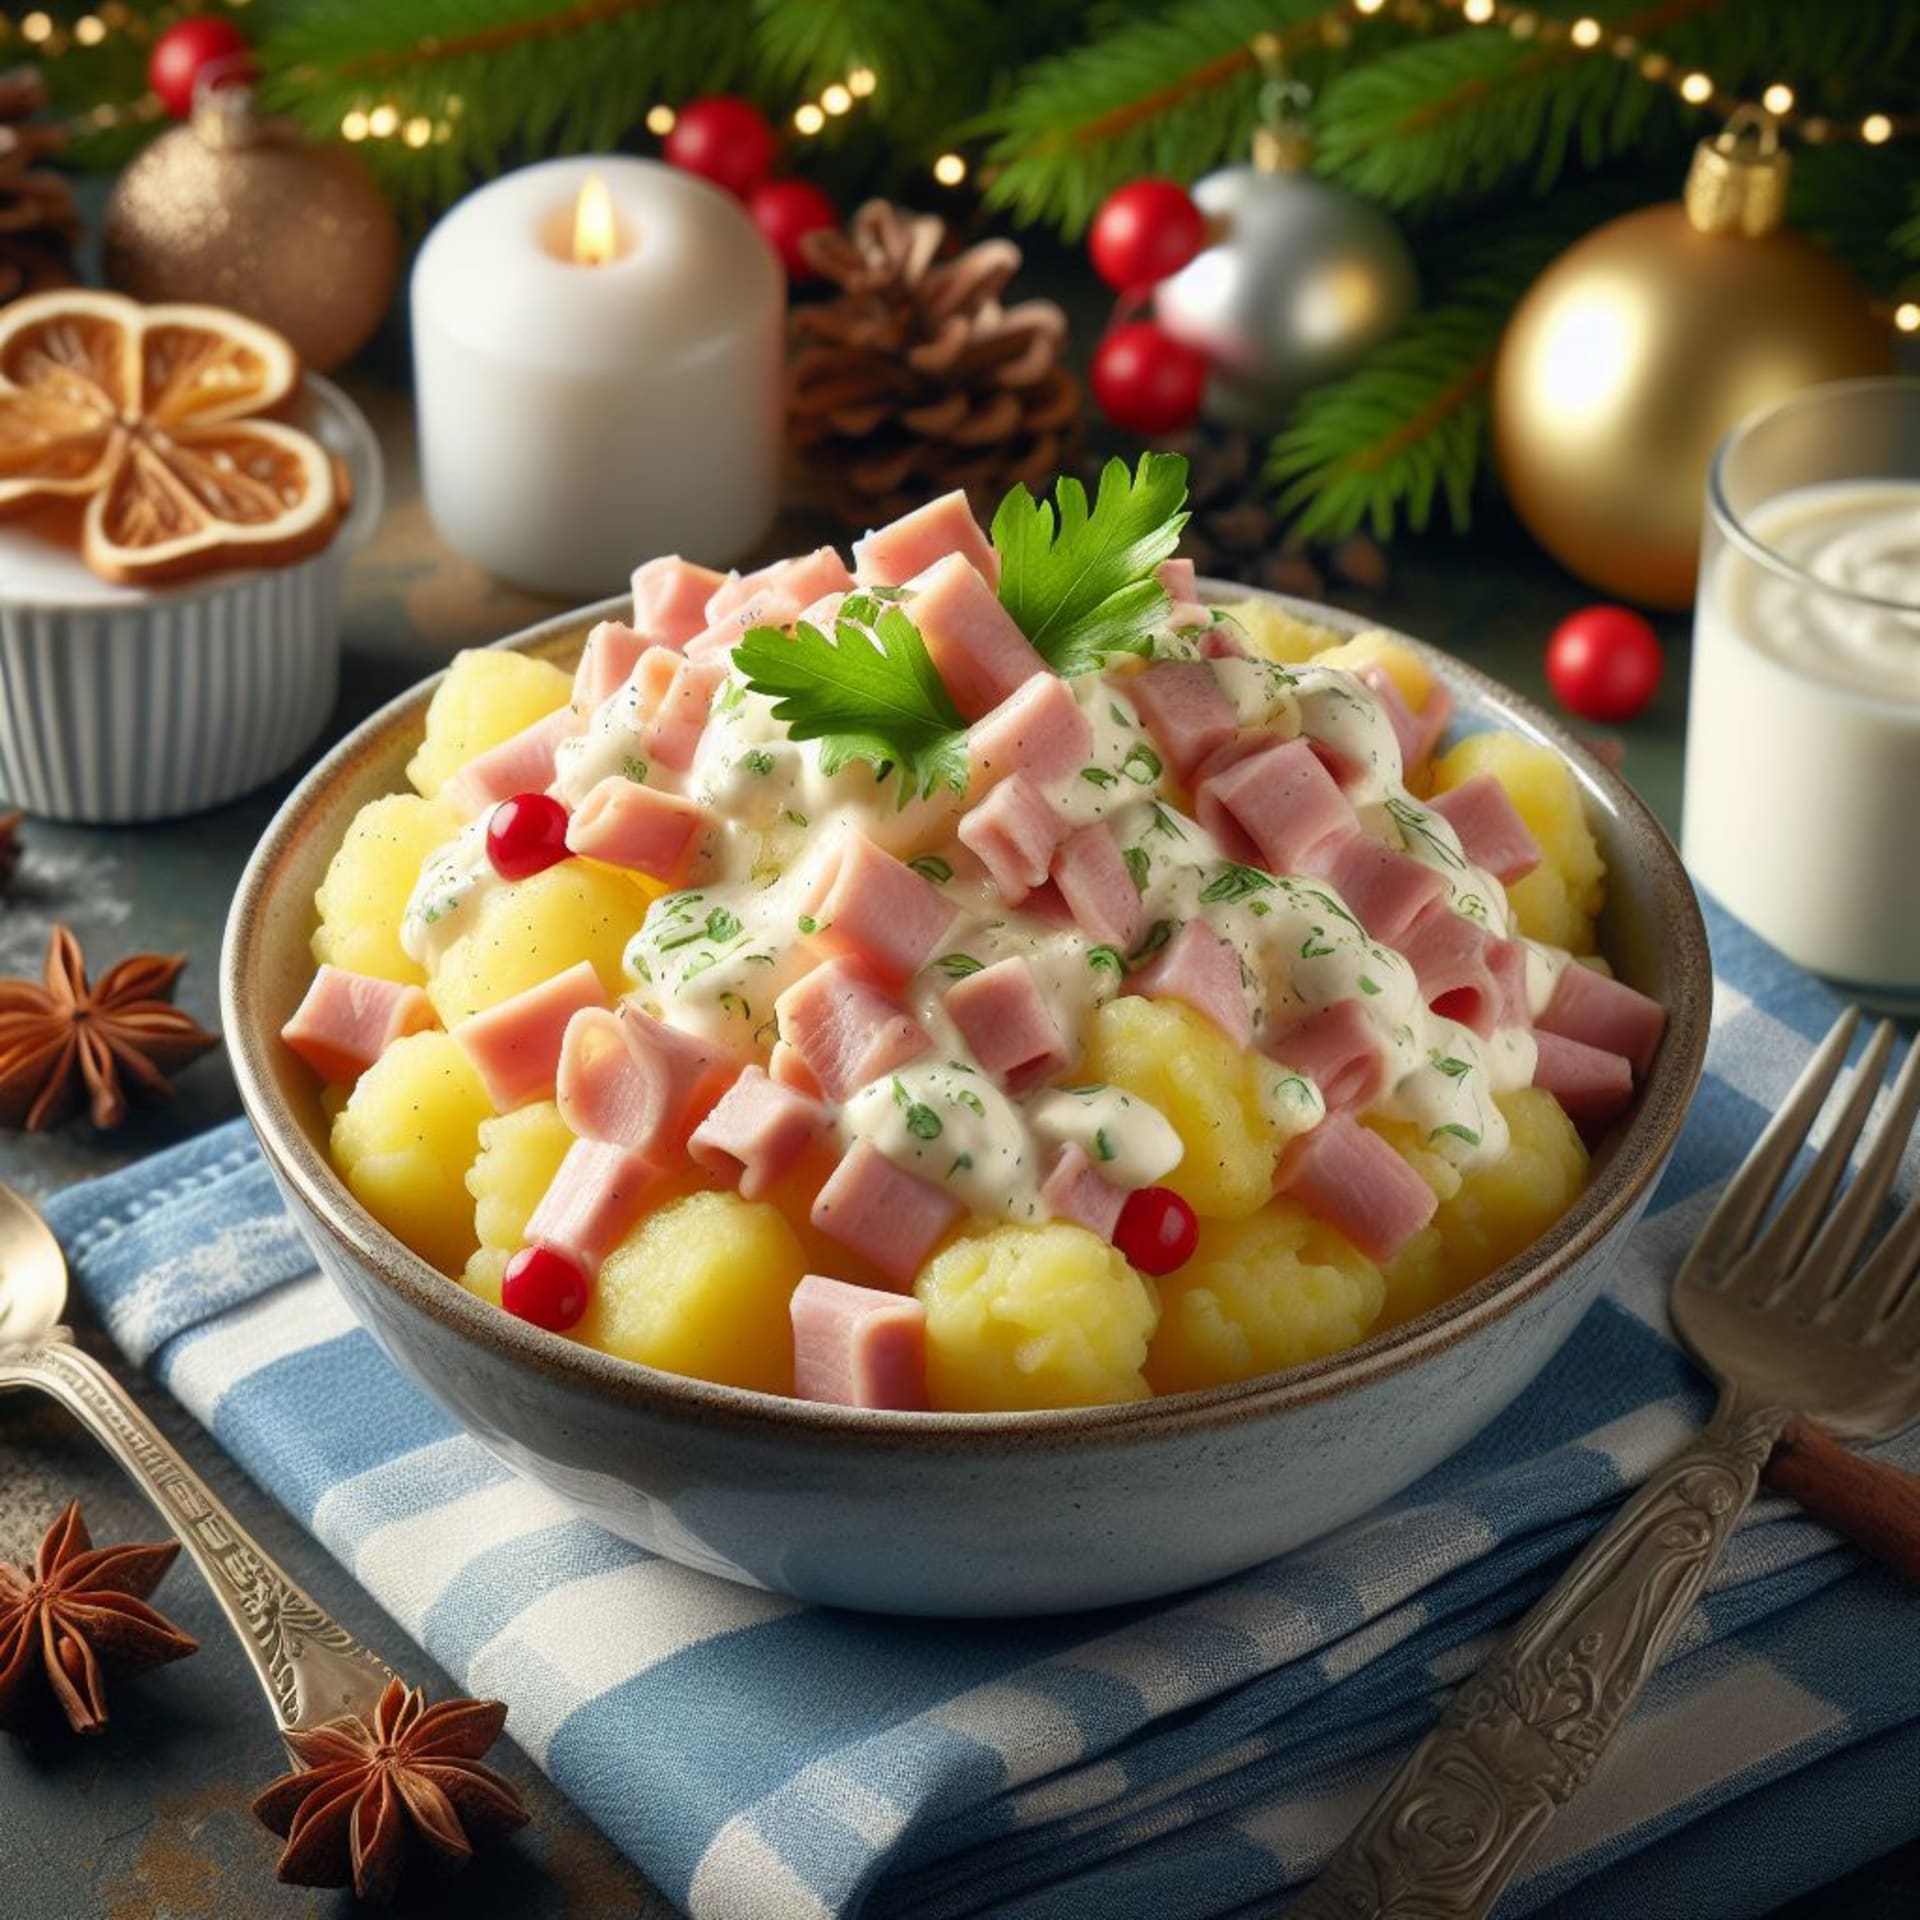 Tradiční český bramborový salát se dočkal rajčátek od umělé inteligence.